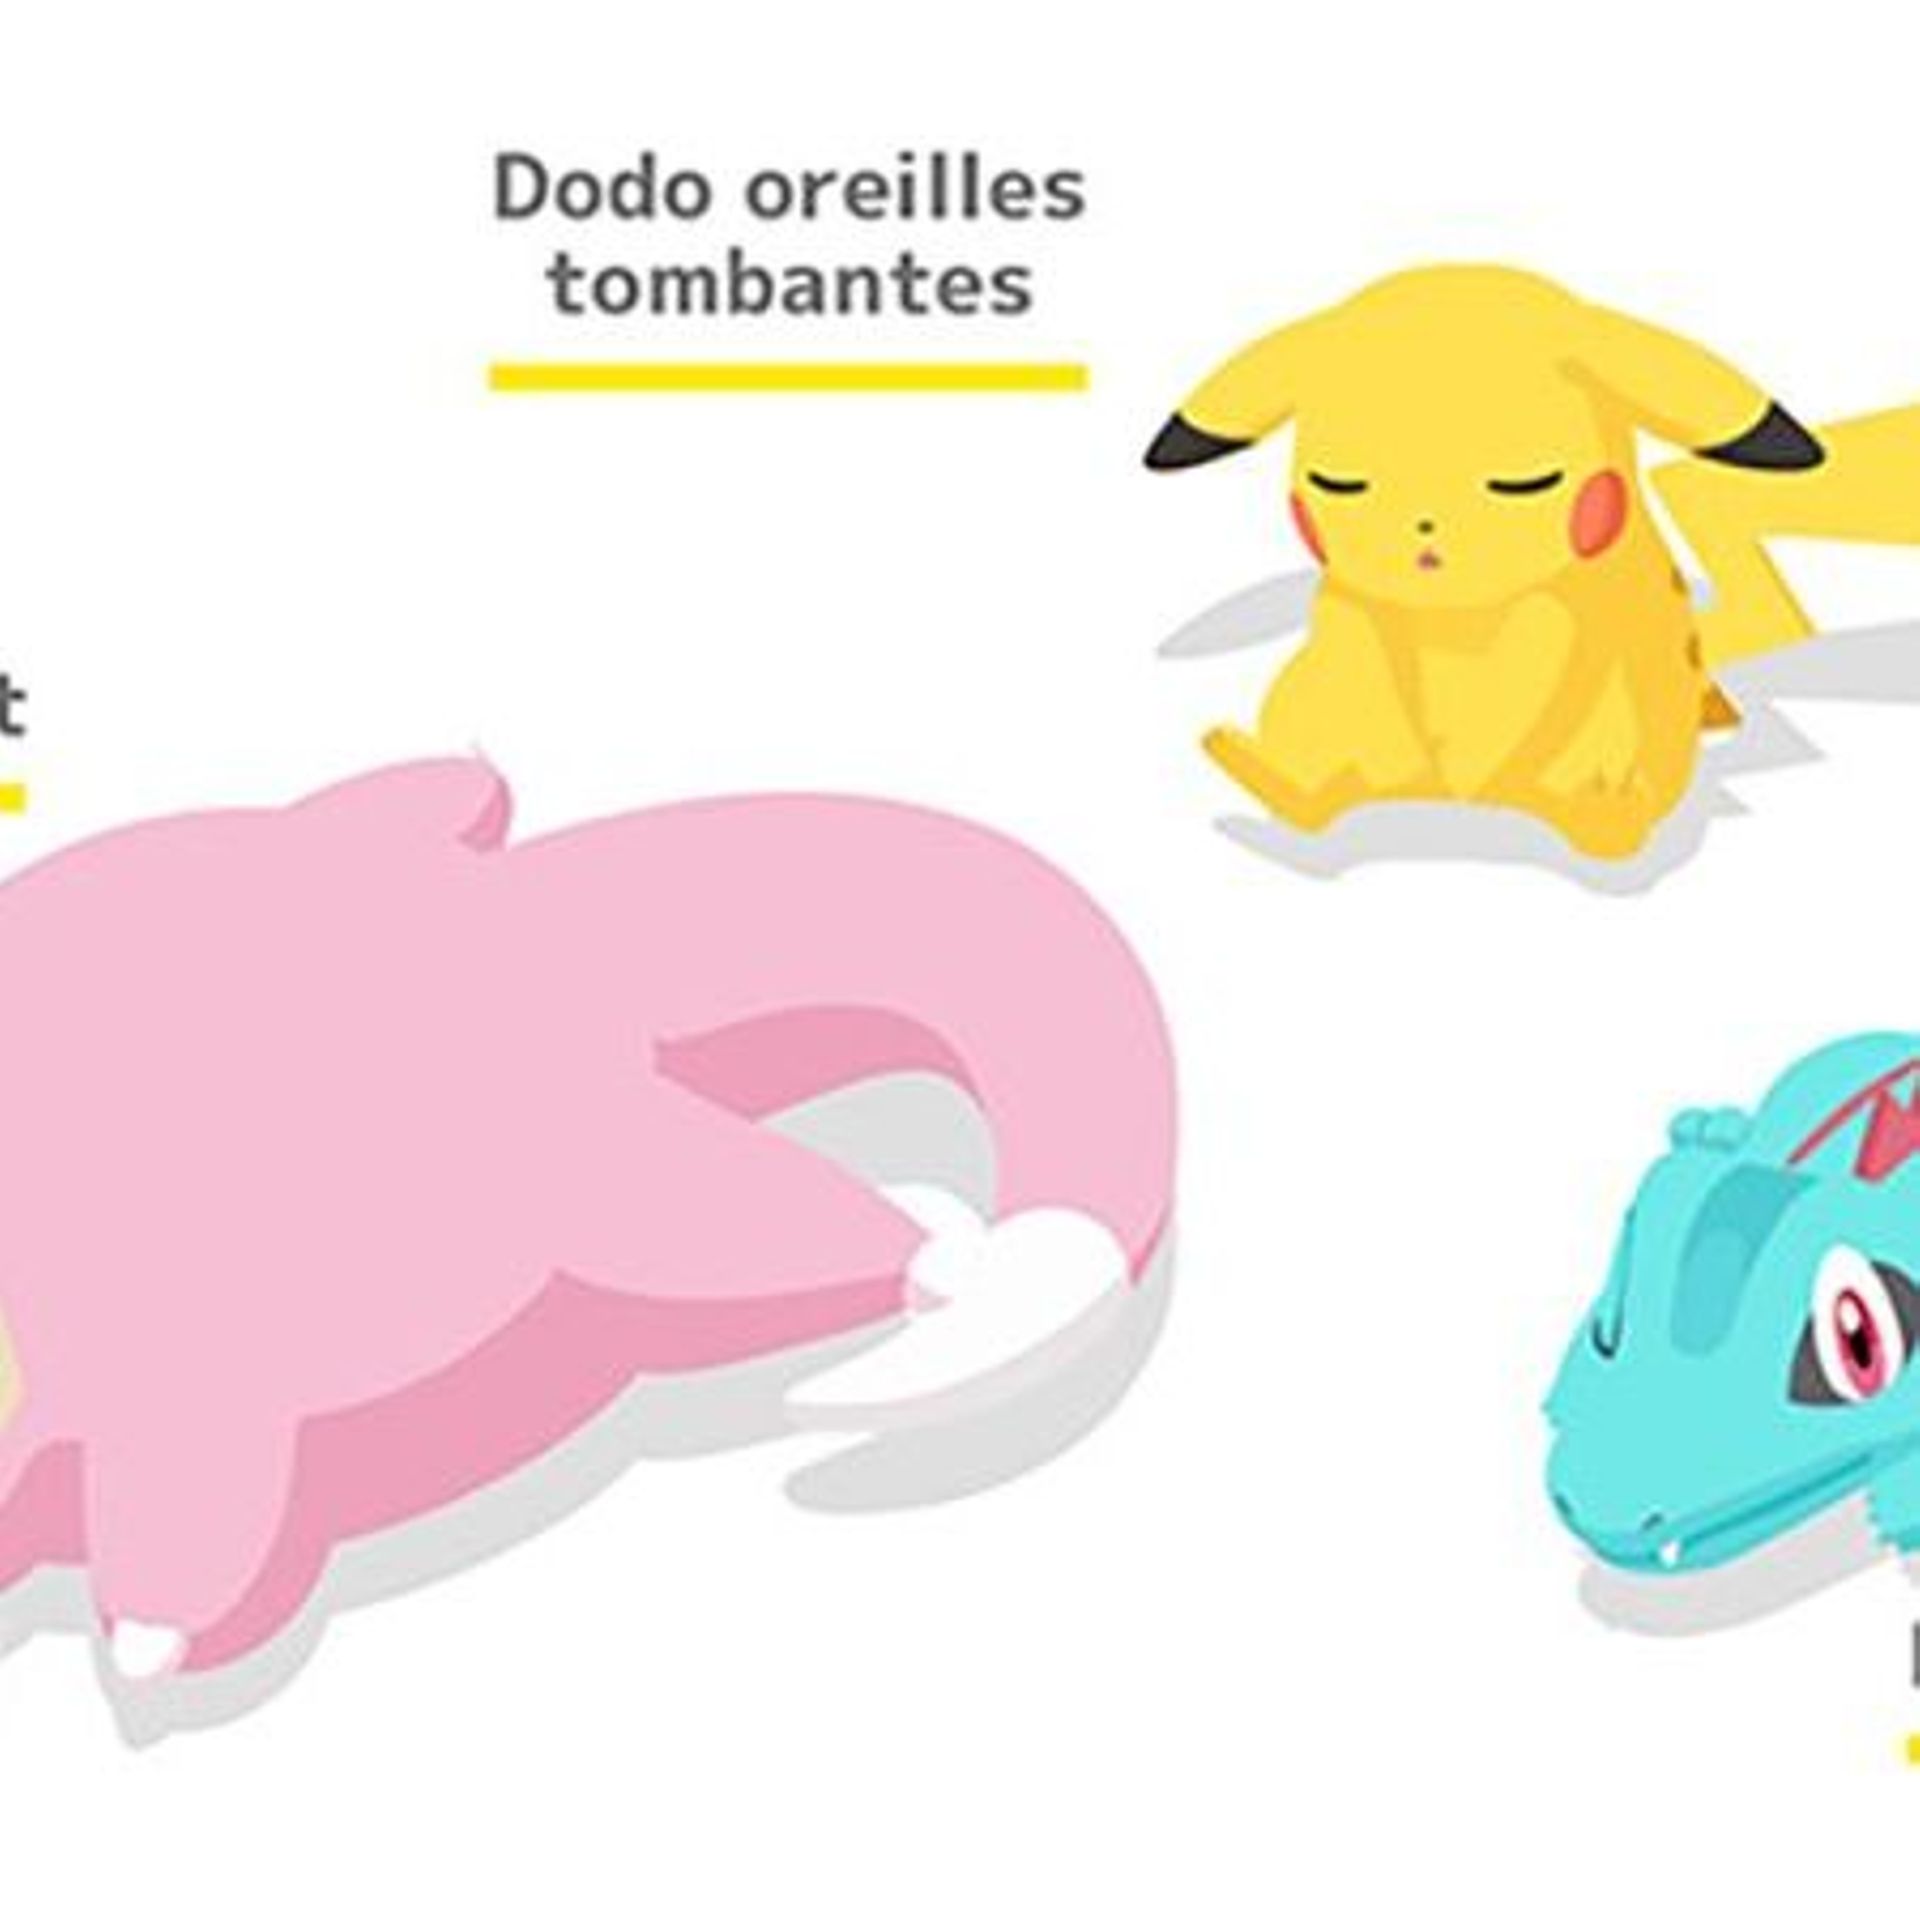 Ce nouveau jeu Pokémon améliore votre sommeil !